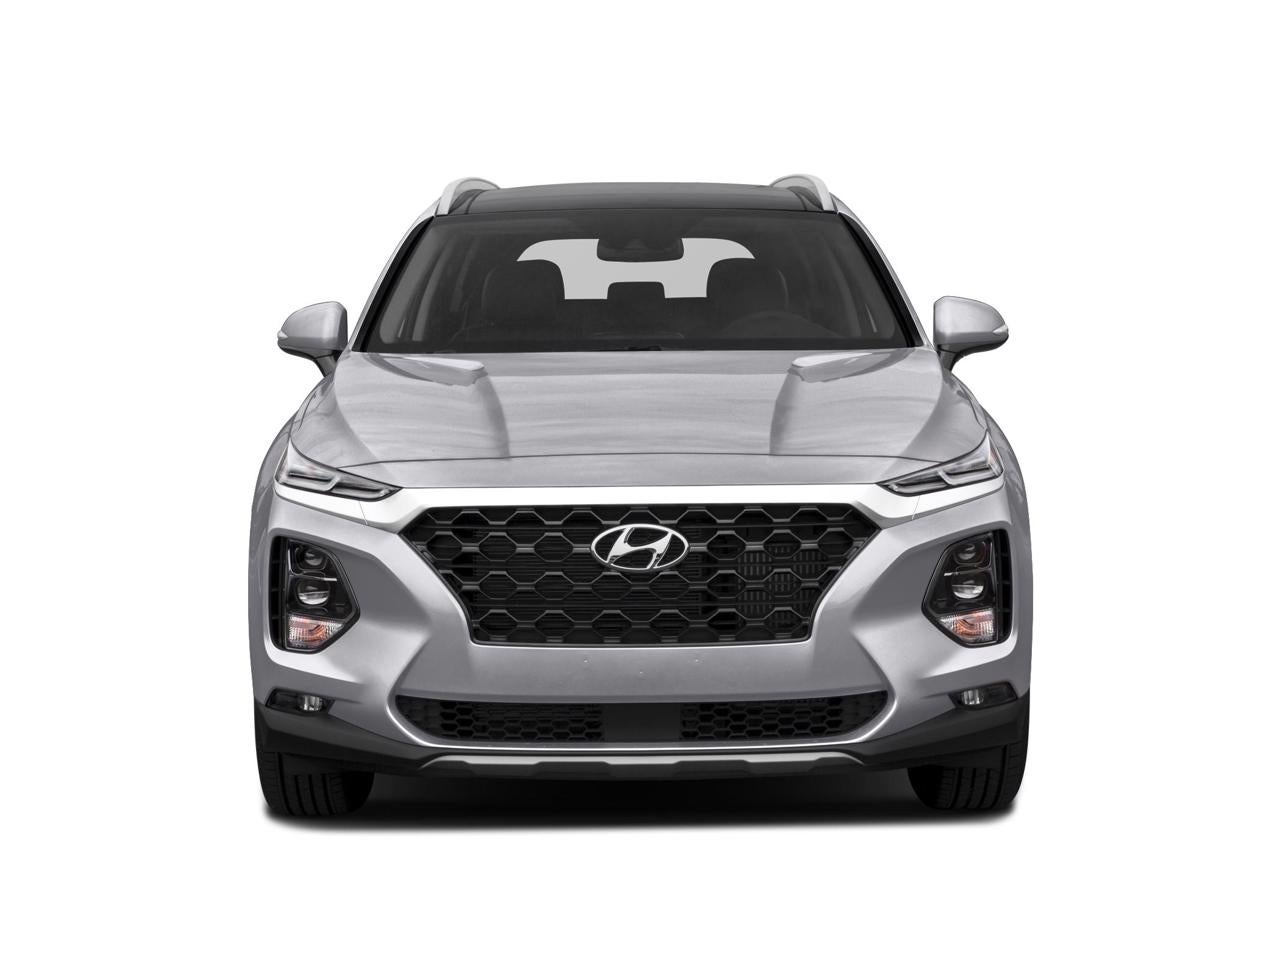 2019 Hyundai Santa Fe Limited 2.0T